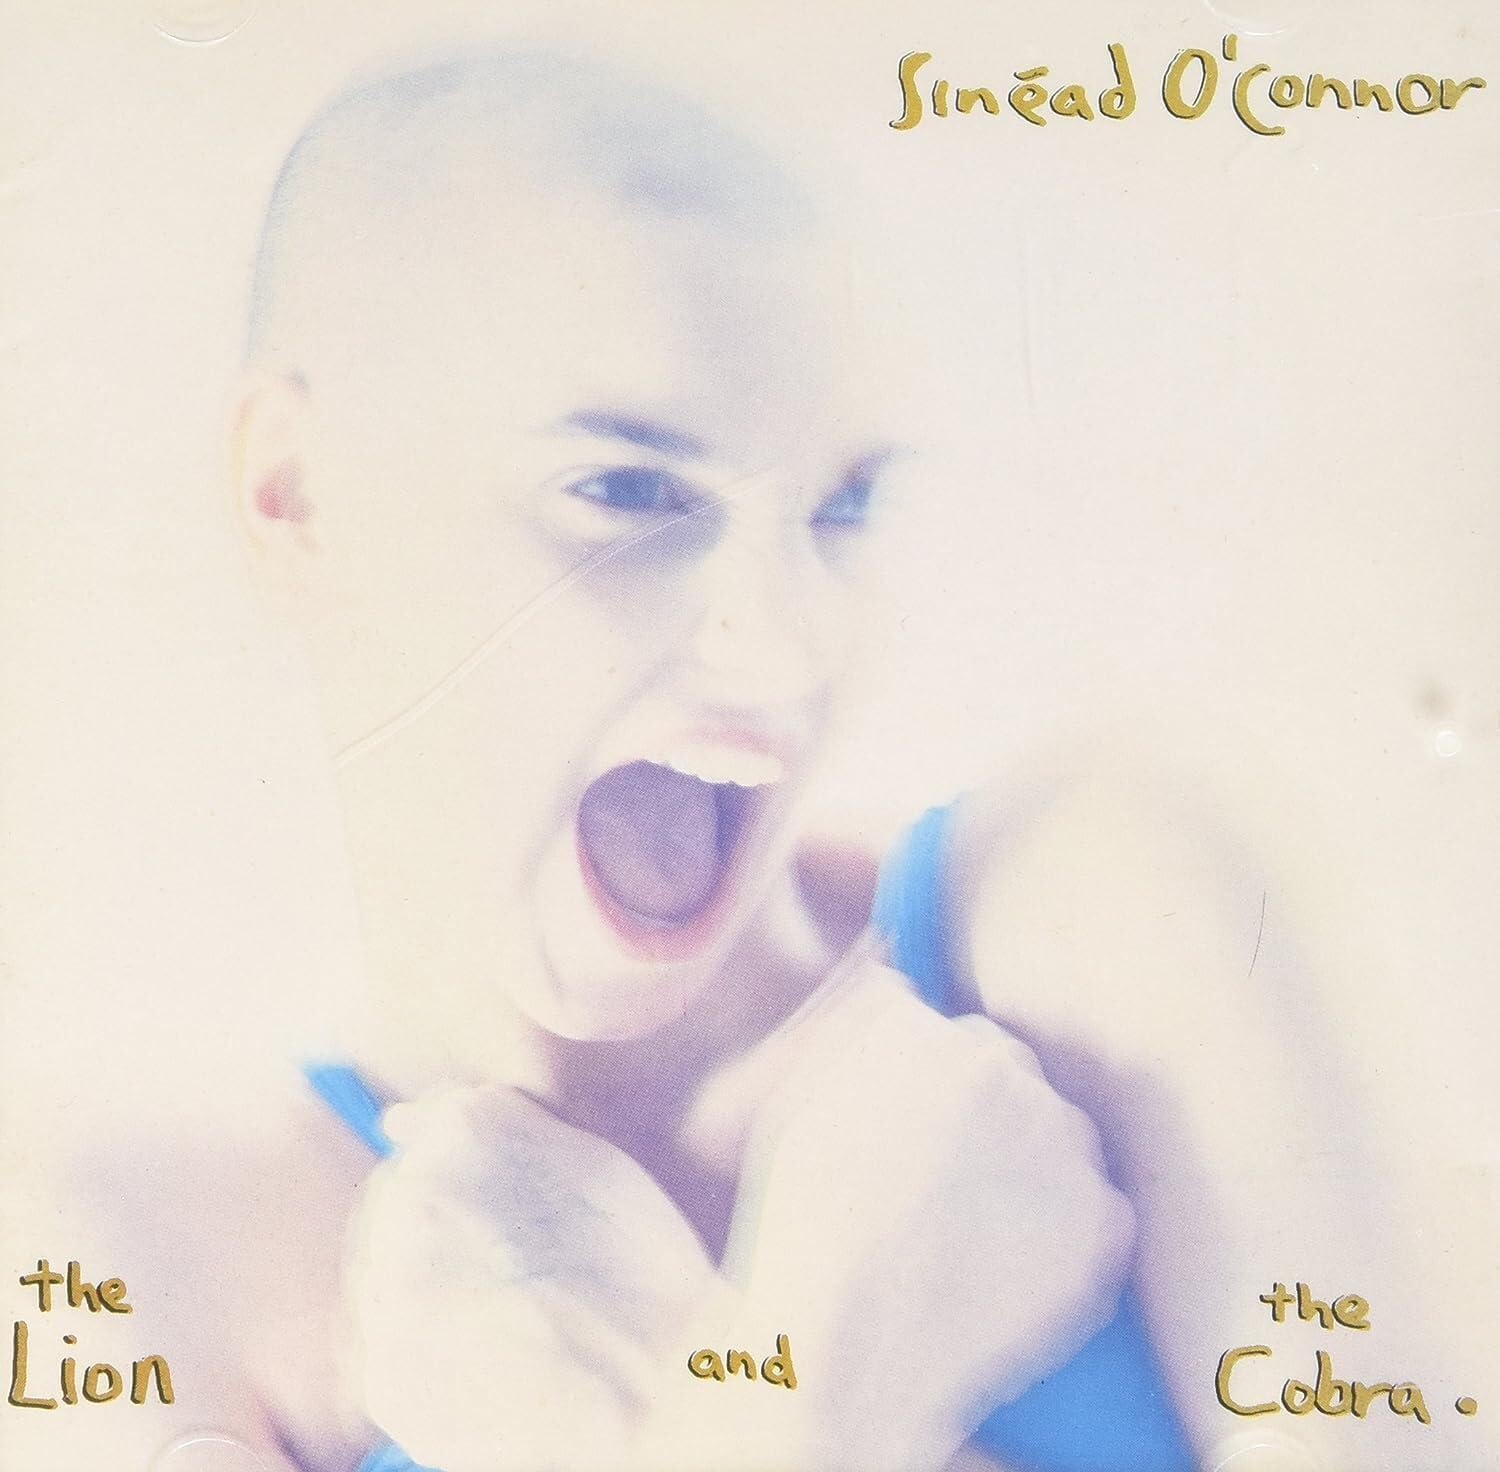 Copertina Vinile 33 giri The Lion and the Cobra di Sinéad O'Connor